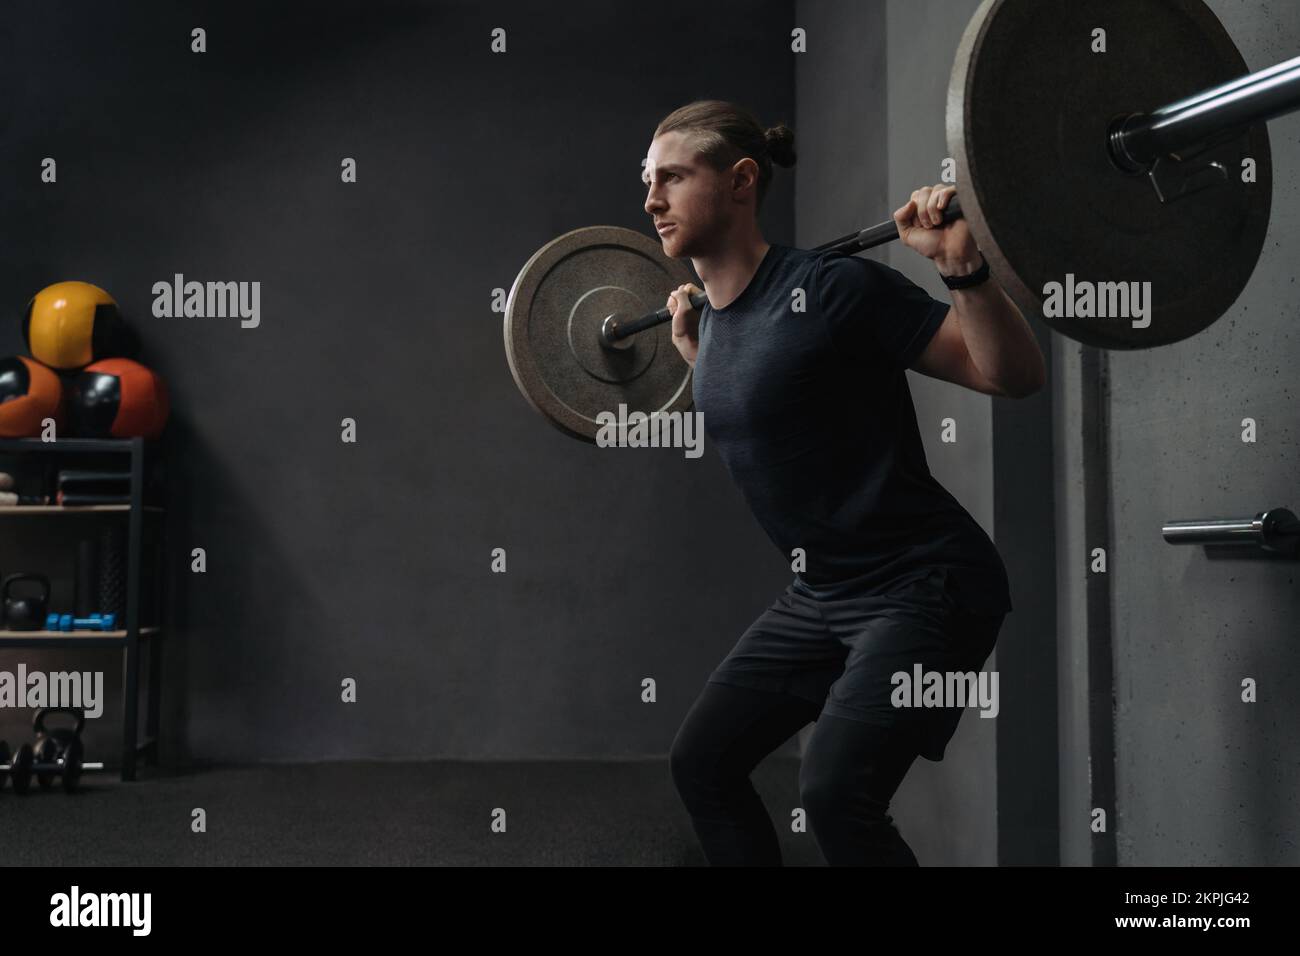 CrossFit athlète levée barbell dans la salle d'entraînement sombre. Concept de formation fonctionnelle et de circuit. Copier l'espace Banque D'Images